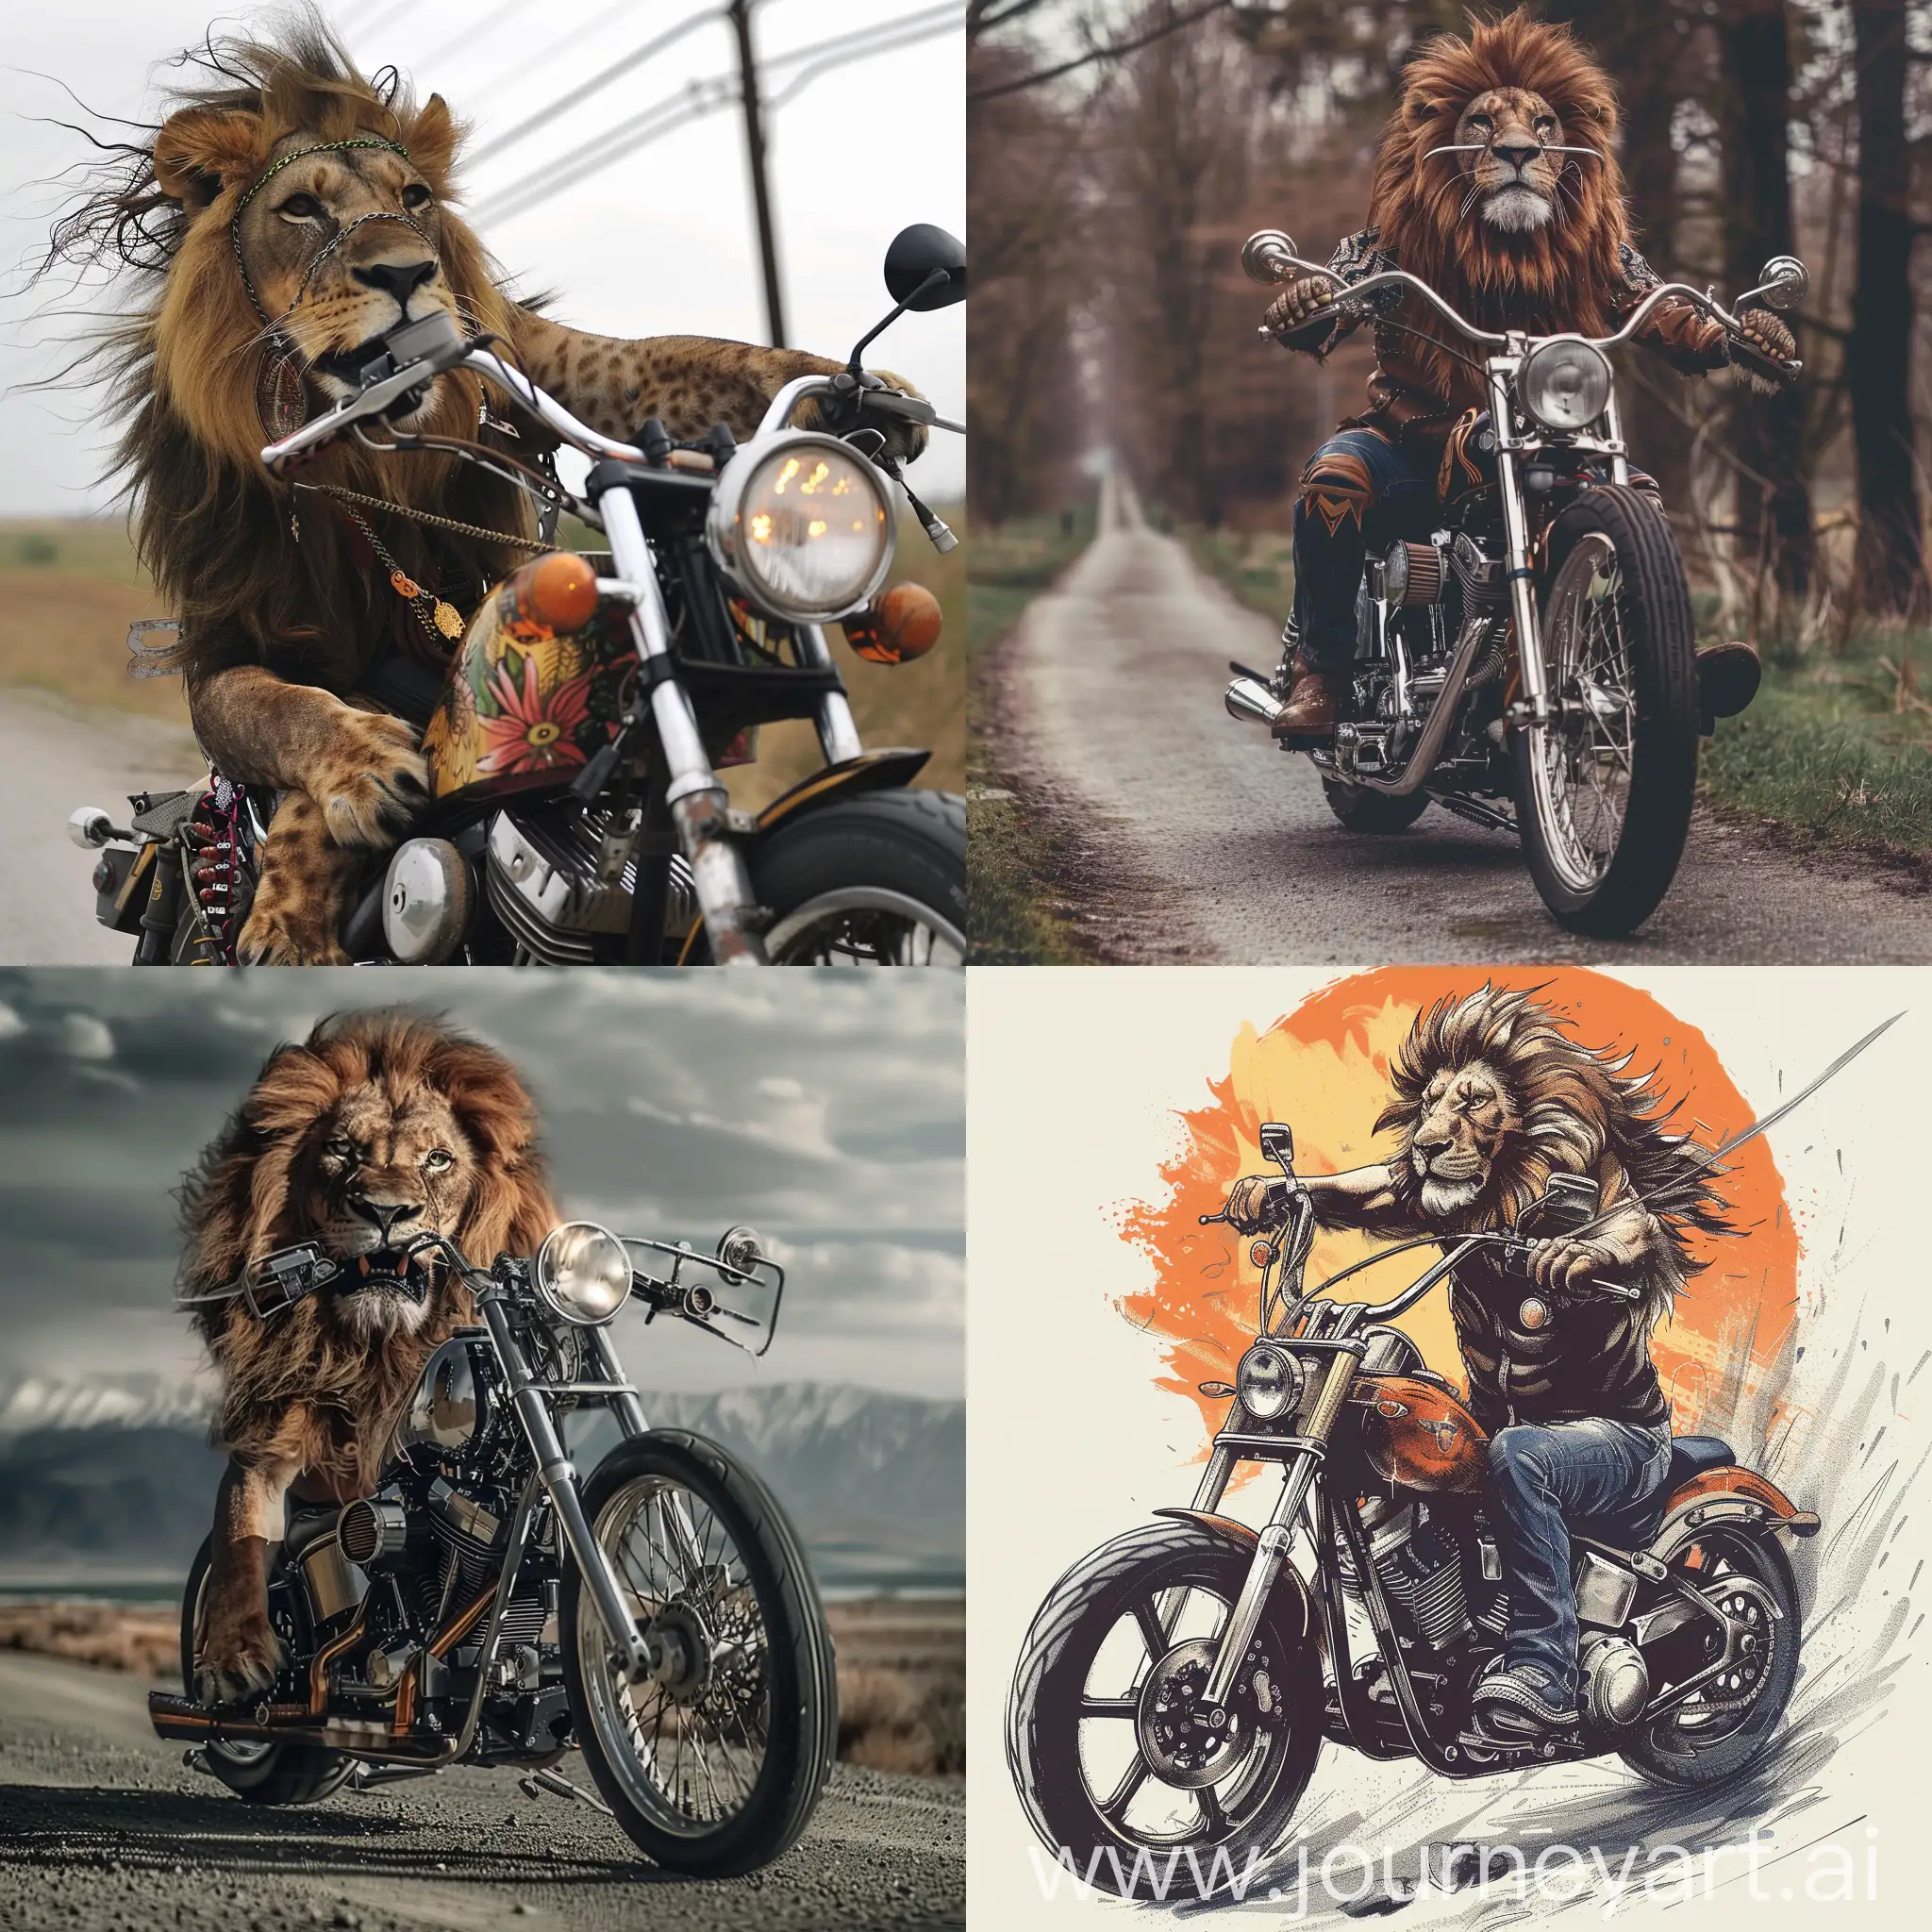 Majestic-Lion-Biker-Roaring-on-a-Custom-Motorcycle